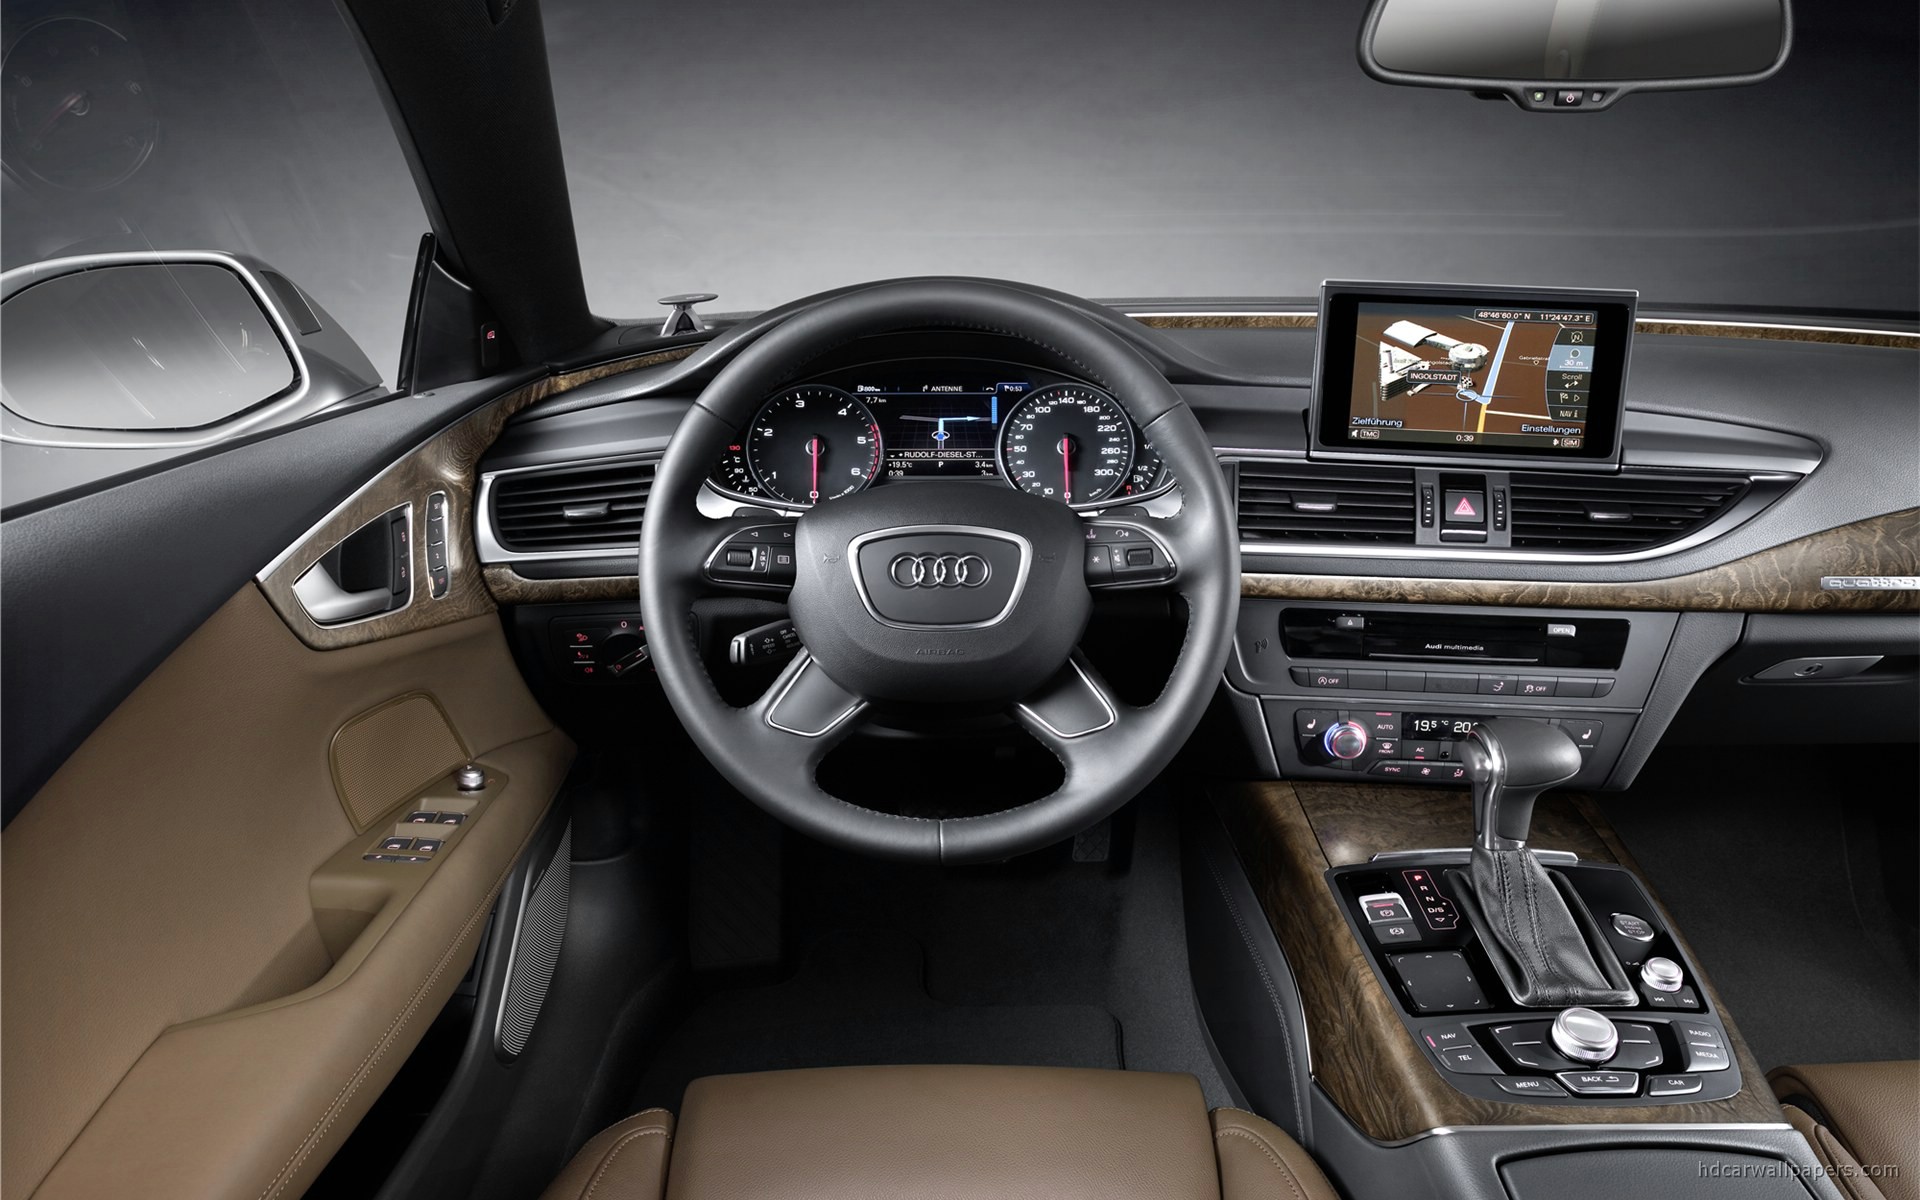 2011 Audi A7 Interior Wallpaper - HD Car Wallpapers #1840